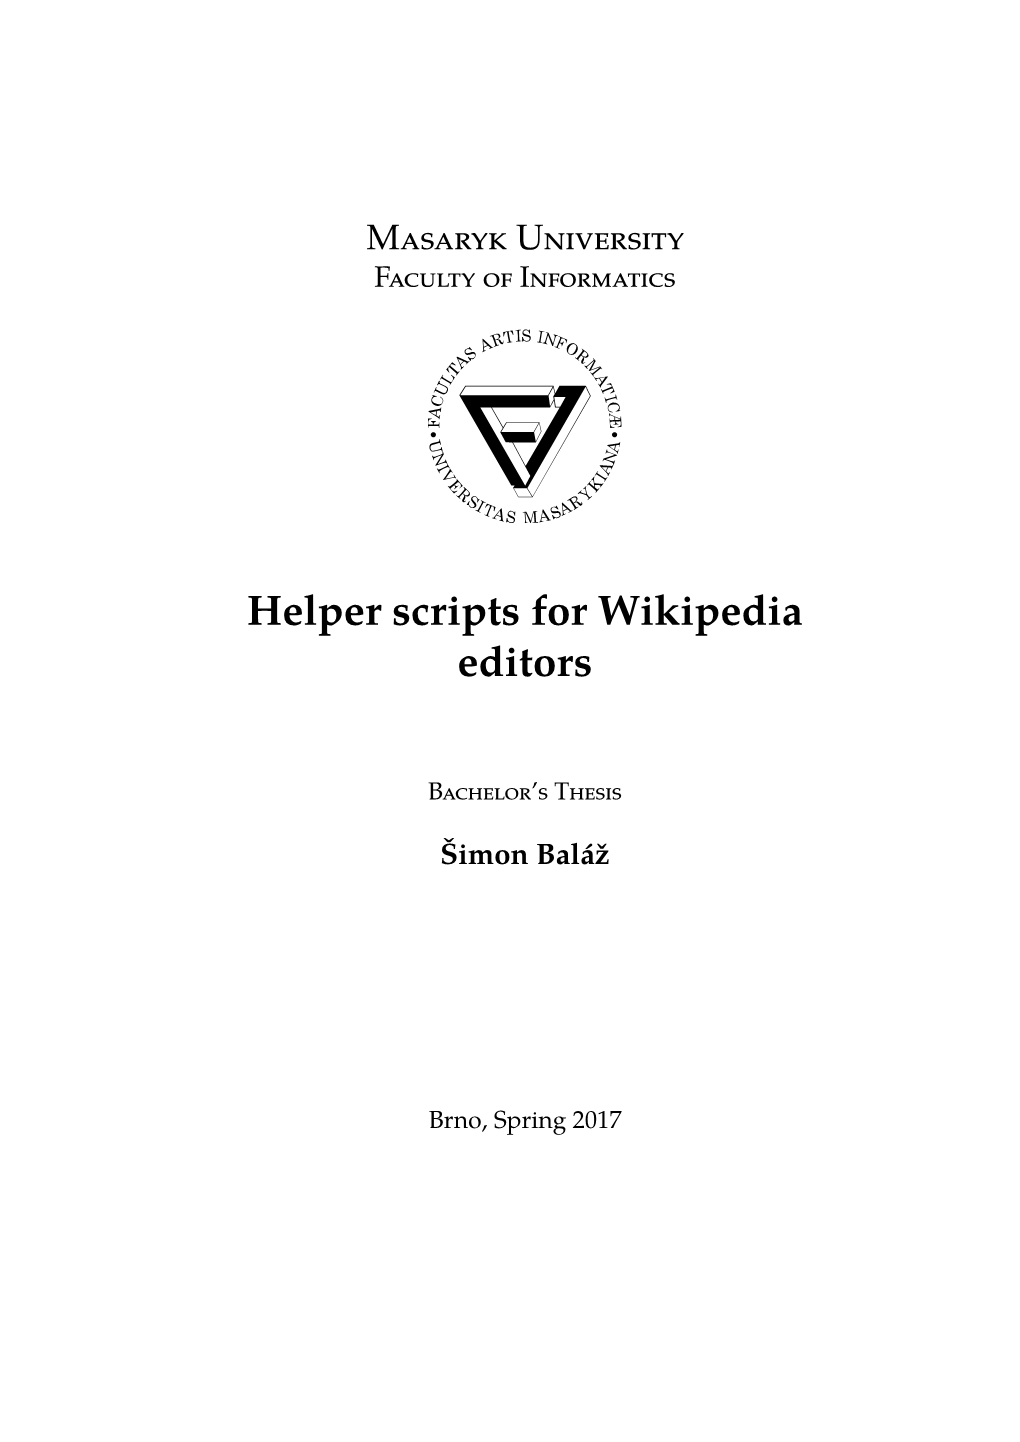 Helper Scripts for Wikipedia Editors